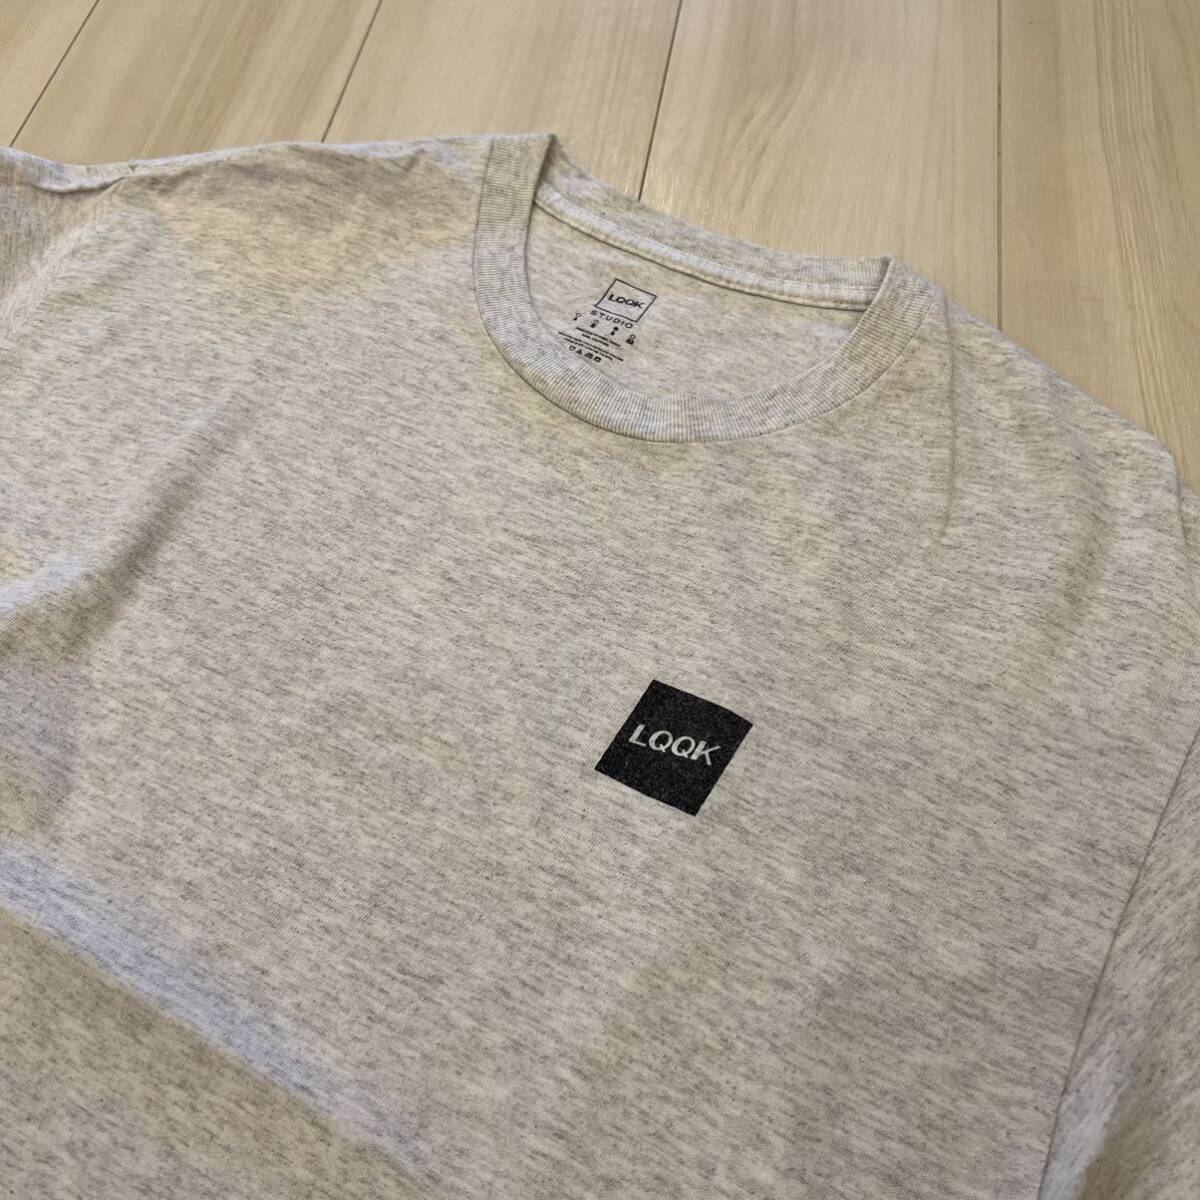 中古 L LQQK STUDIO x supply backdoor Tee Grey ルックスタジオ 限定 10周年 LQQK ロゴ Exclusive Tシャツ グレー_画像3